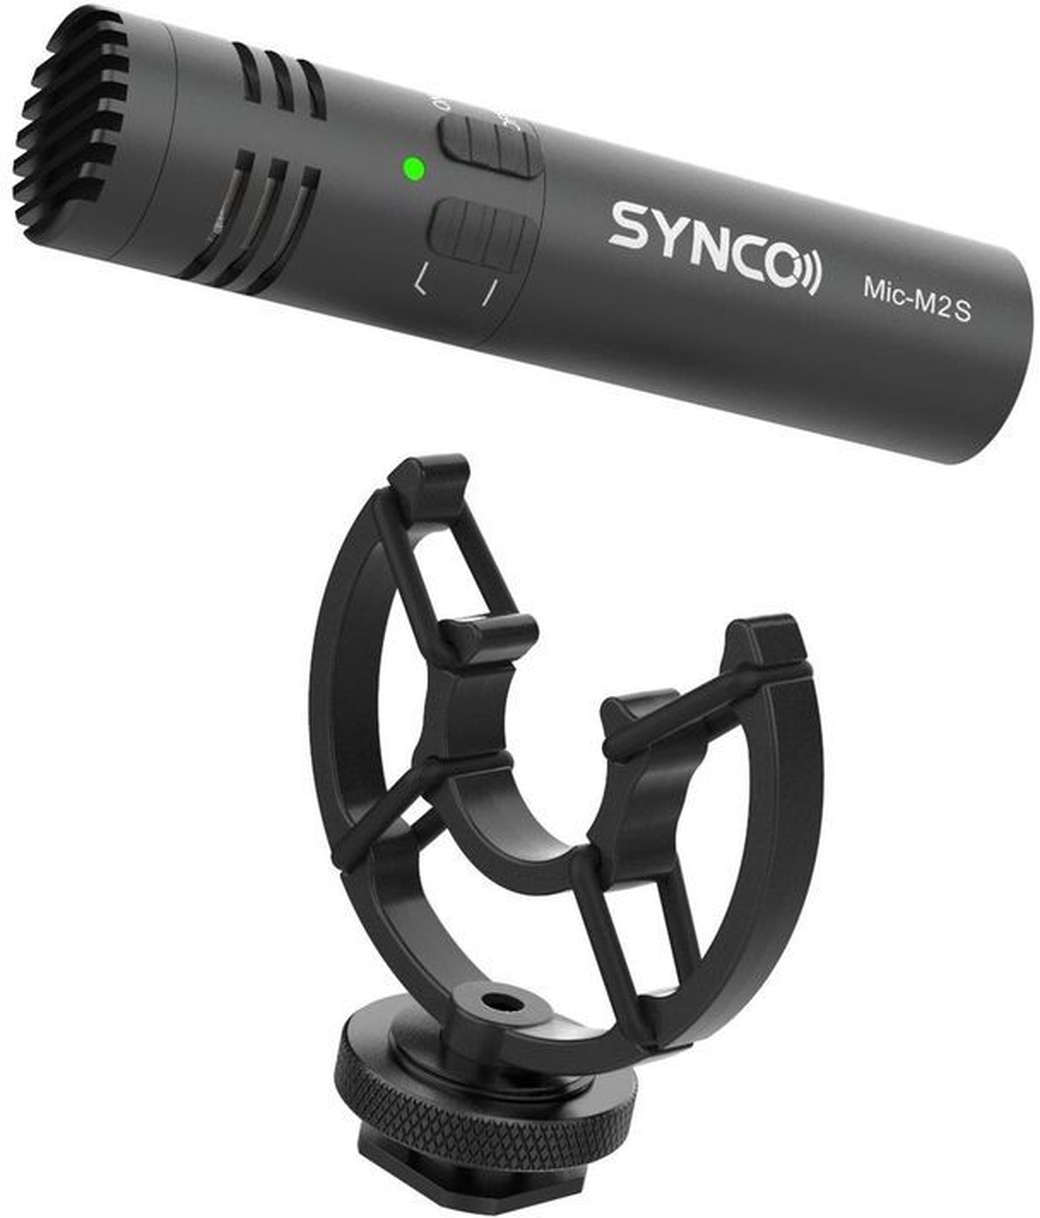 Направленный конденсаторный микрофон Synco Mic-M2S фото